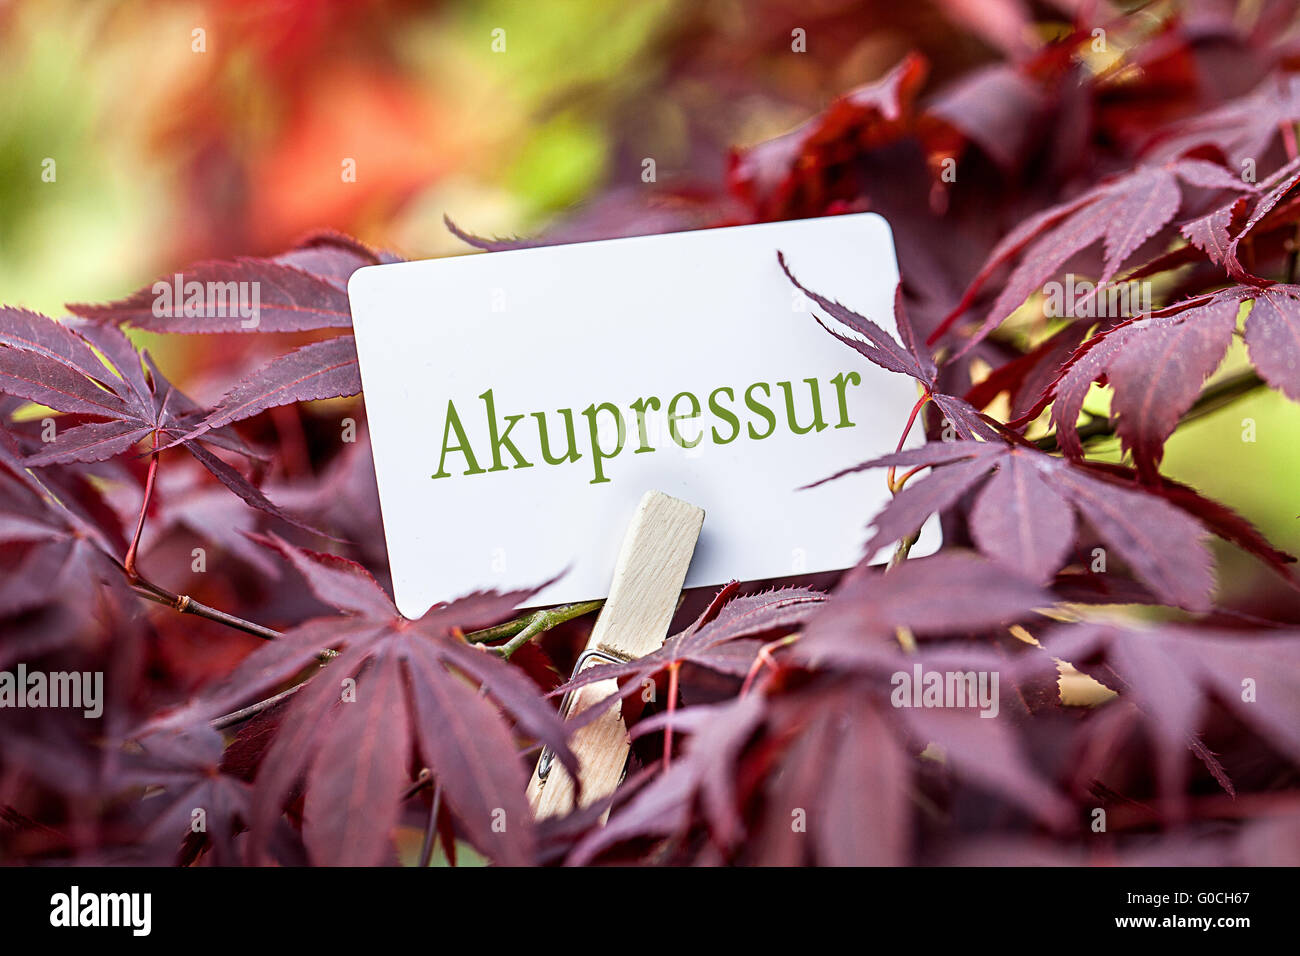 Le mot "Akupressur" dans un ventilateur-maple tree Banque D'Images